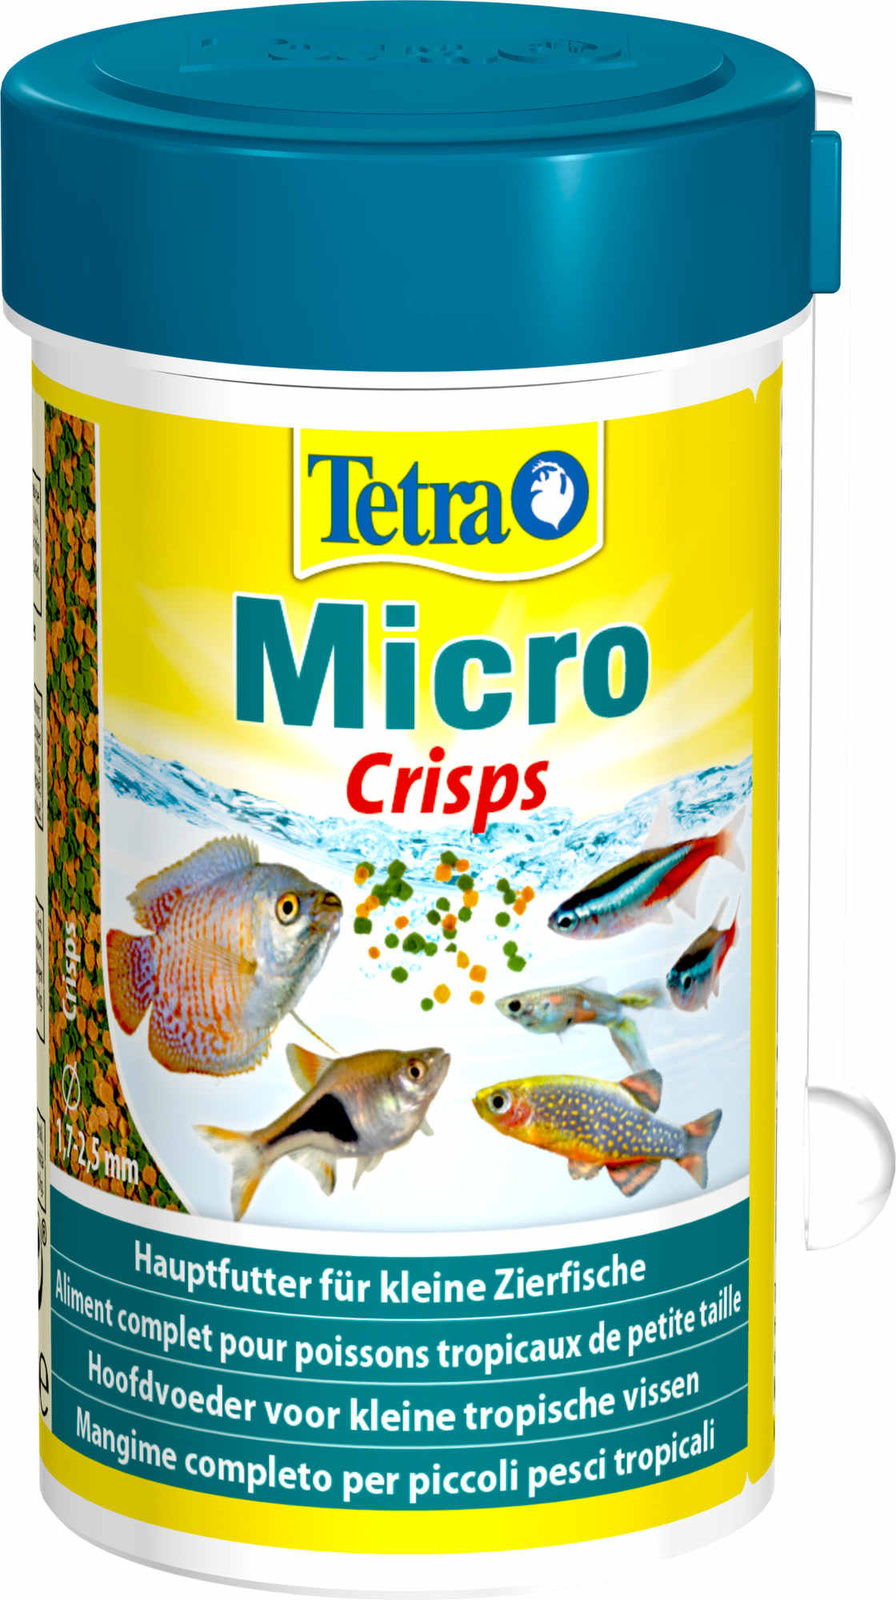 Tetra (корма) Tetra (корма) корм для для всех видов мелких рыб, микрочипсы (39 г) tetra корма tetra корма корм для всех видов мелких рыб четыре вида корма 65 г